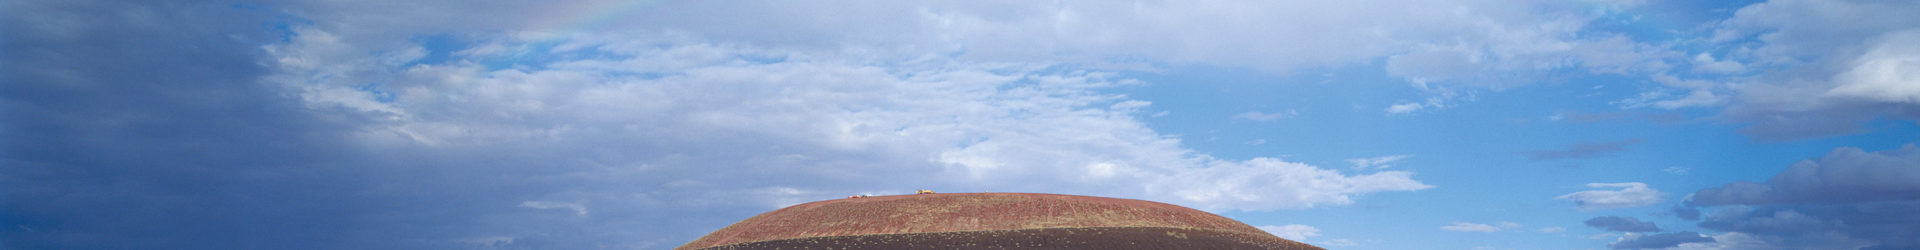 风景，艺术，傻傻分不清楚：火山口里的天文台